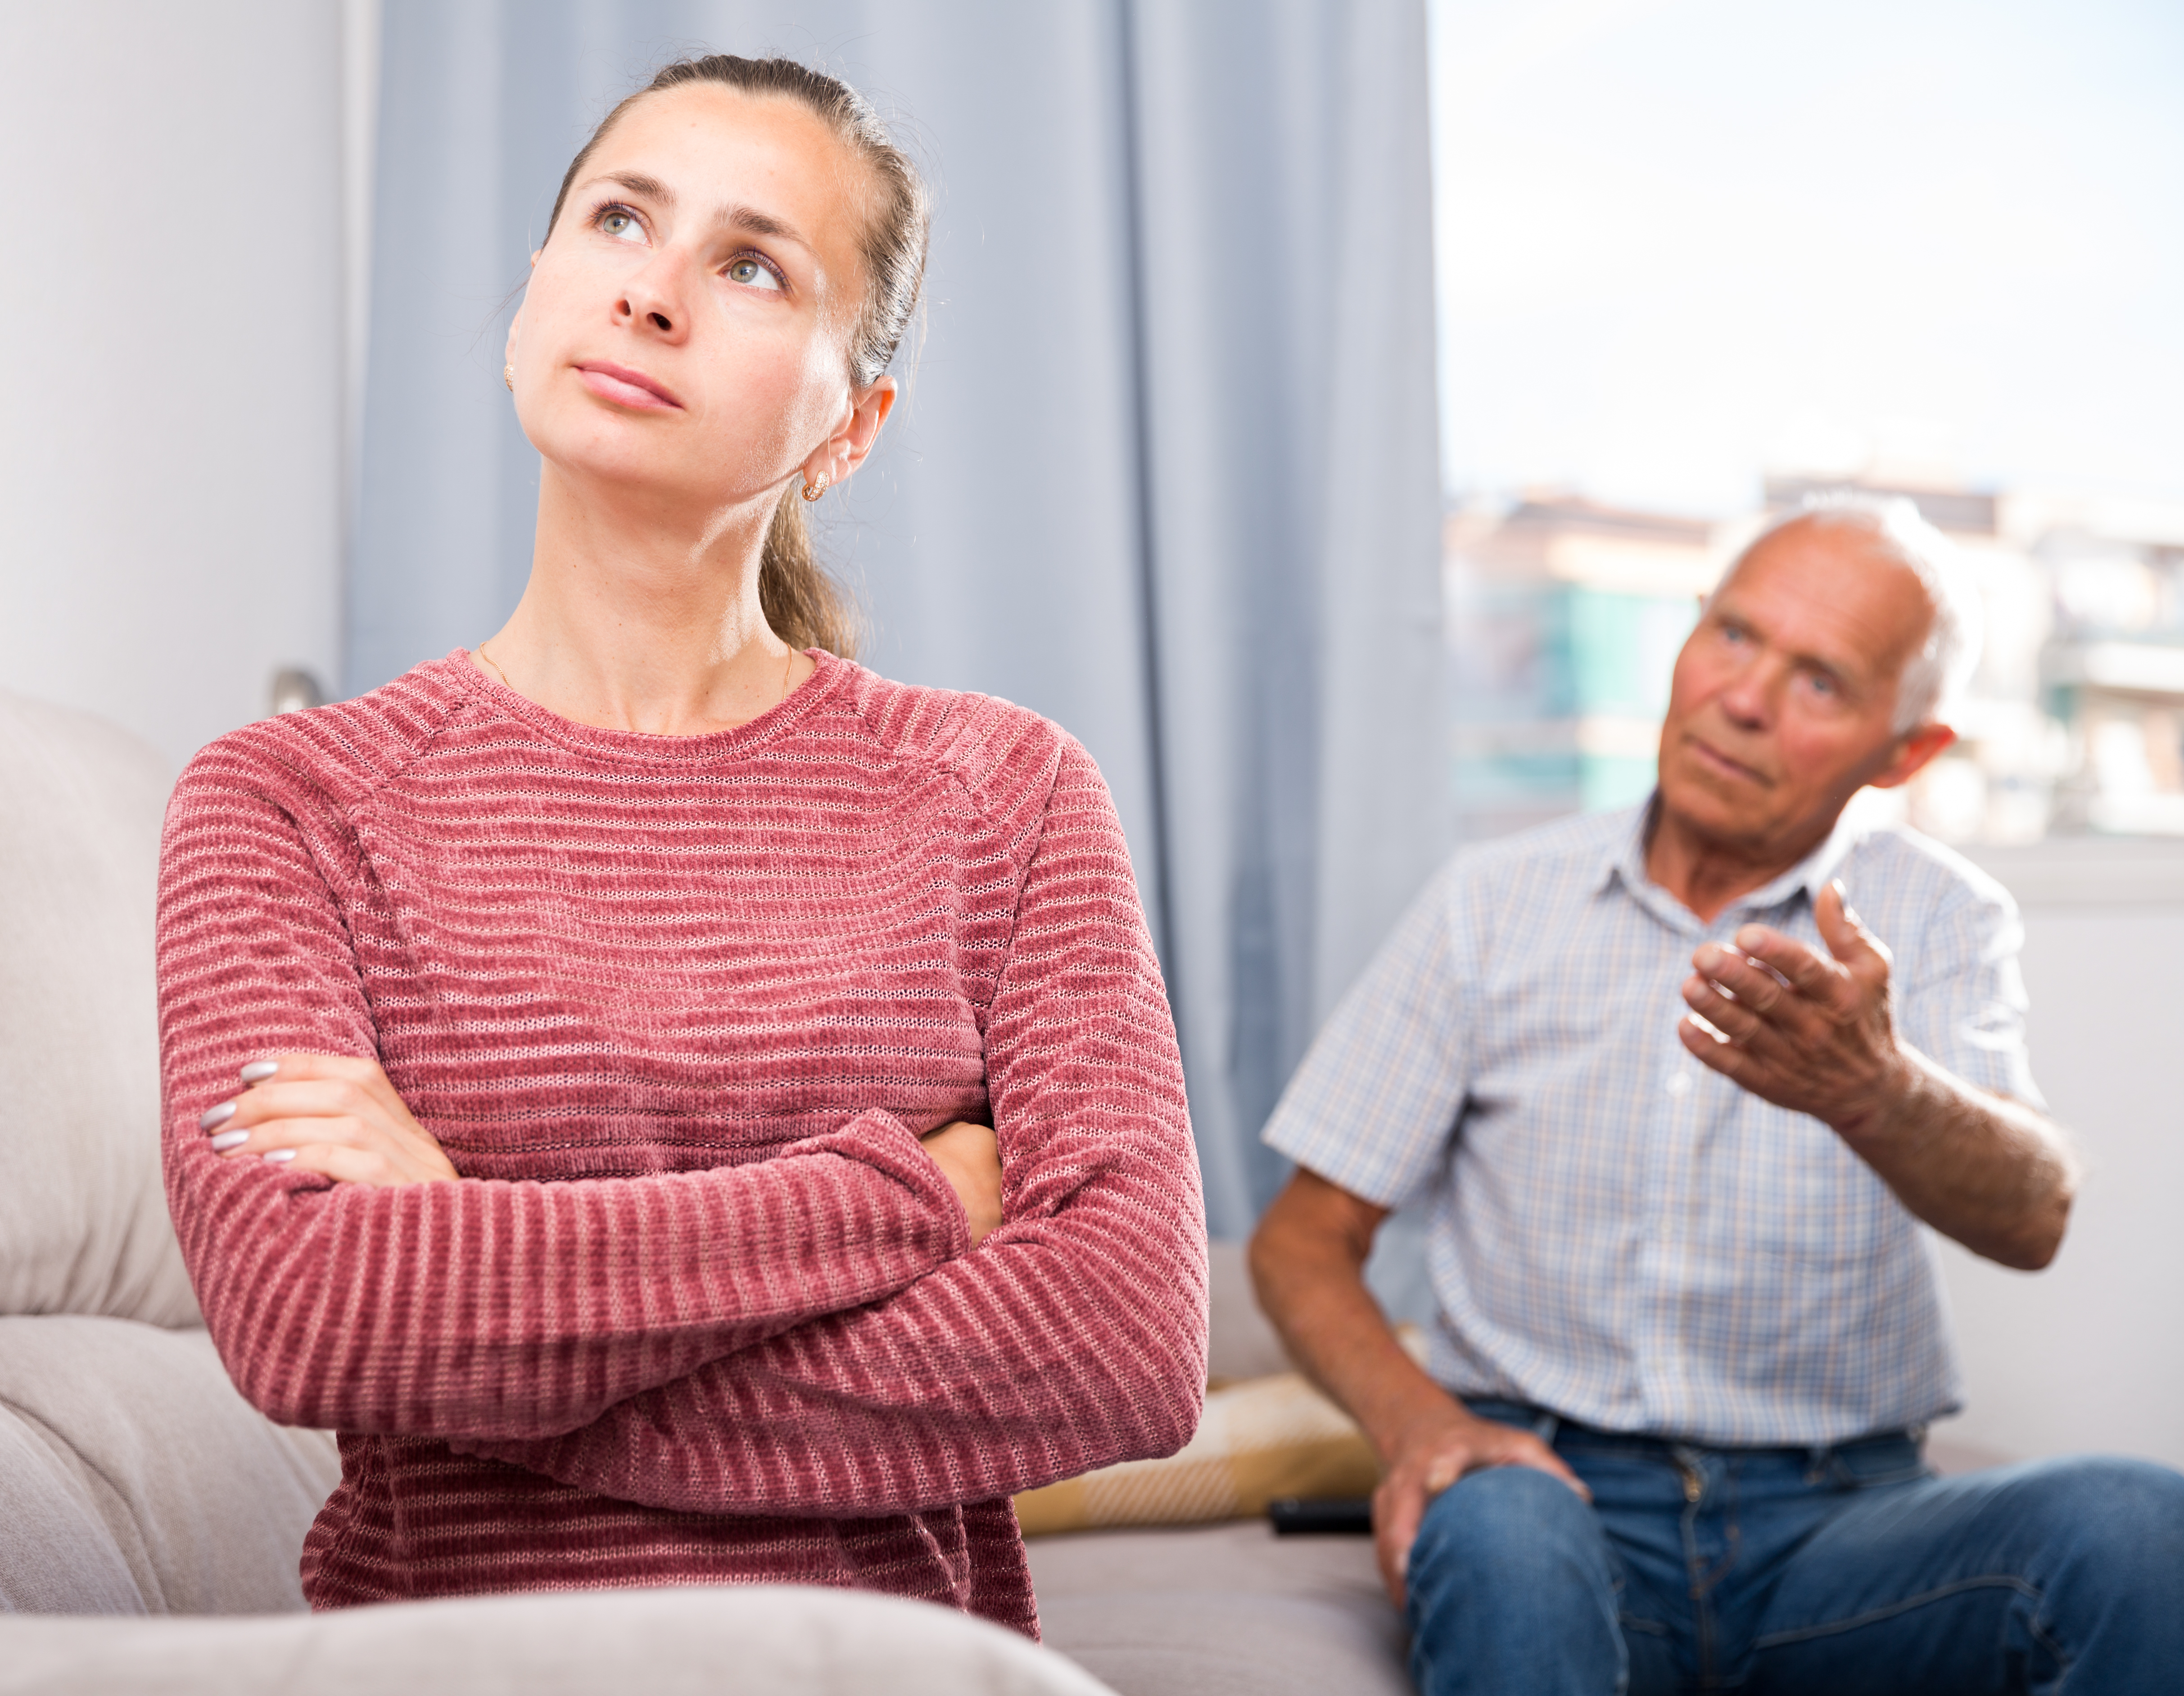 Ein älterer Mann in einer hitzigen Diskussion mit einer jüngeren Frau | Quelle: Shutterstock